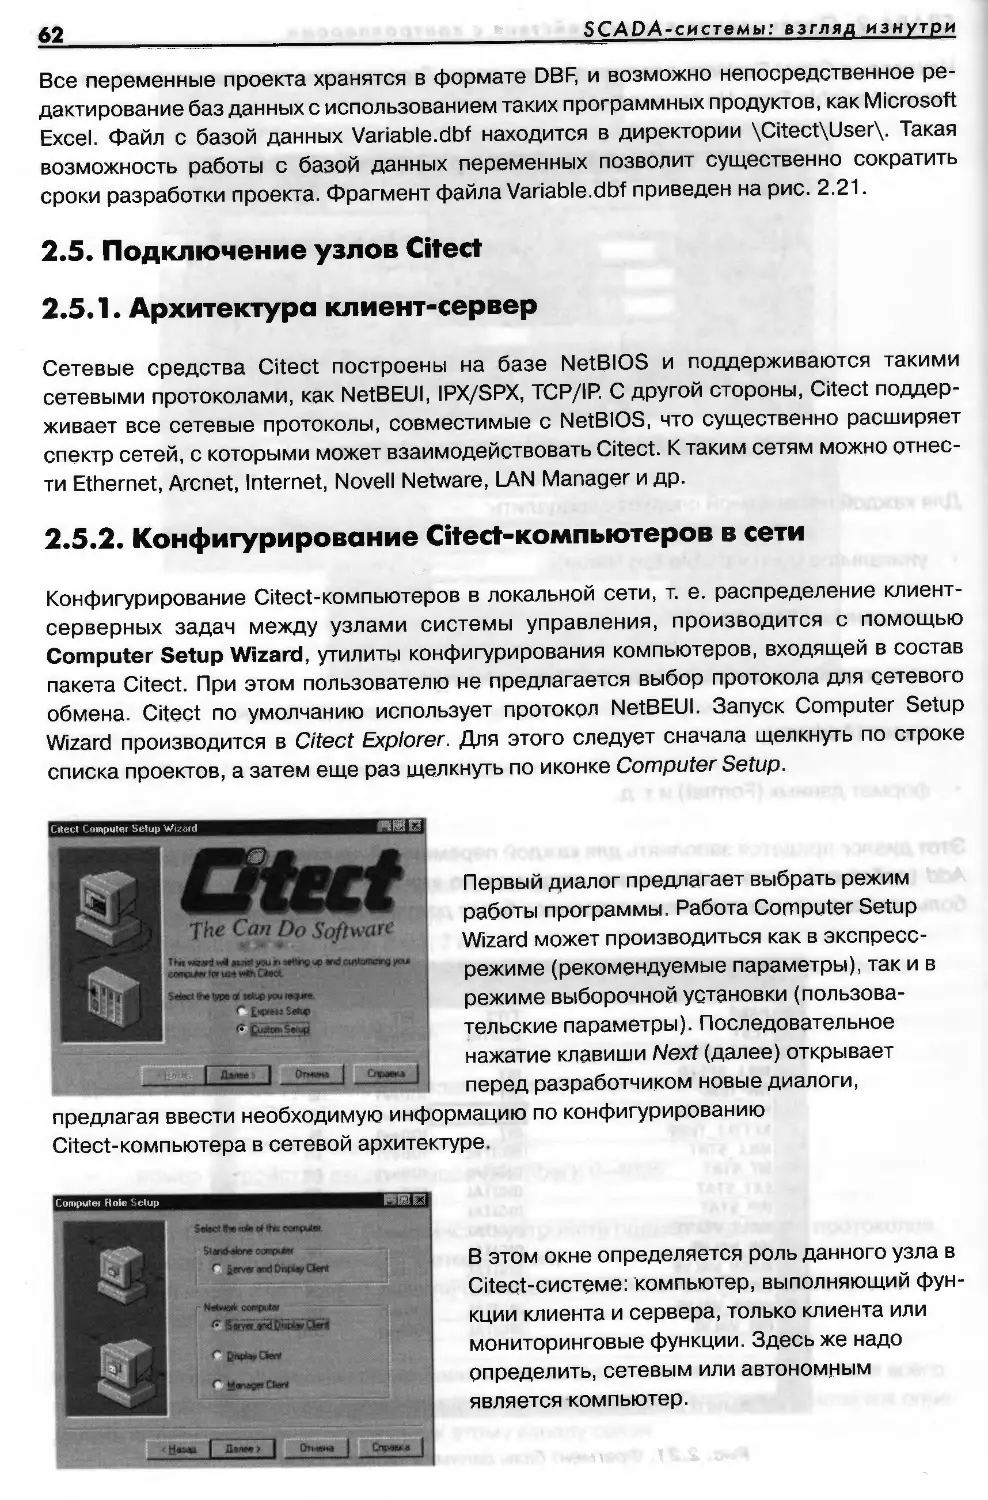 2.5. Подключение узлов Citect
2.5.2.    Конфигурирование Citect-компьютеров в сети